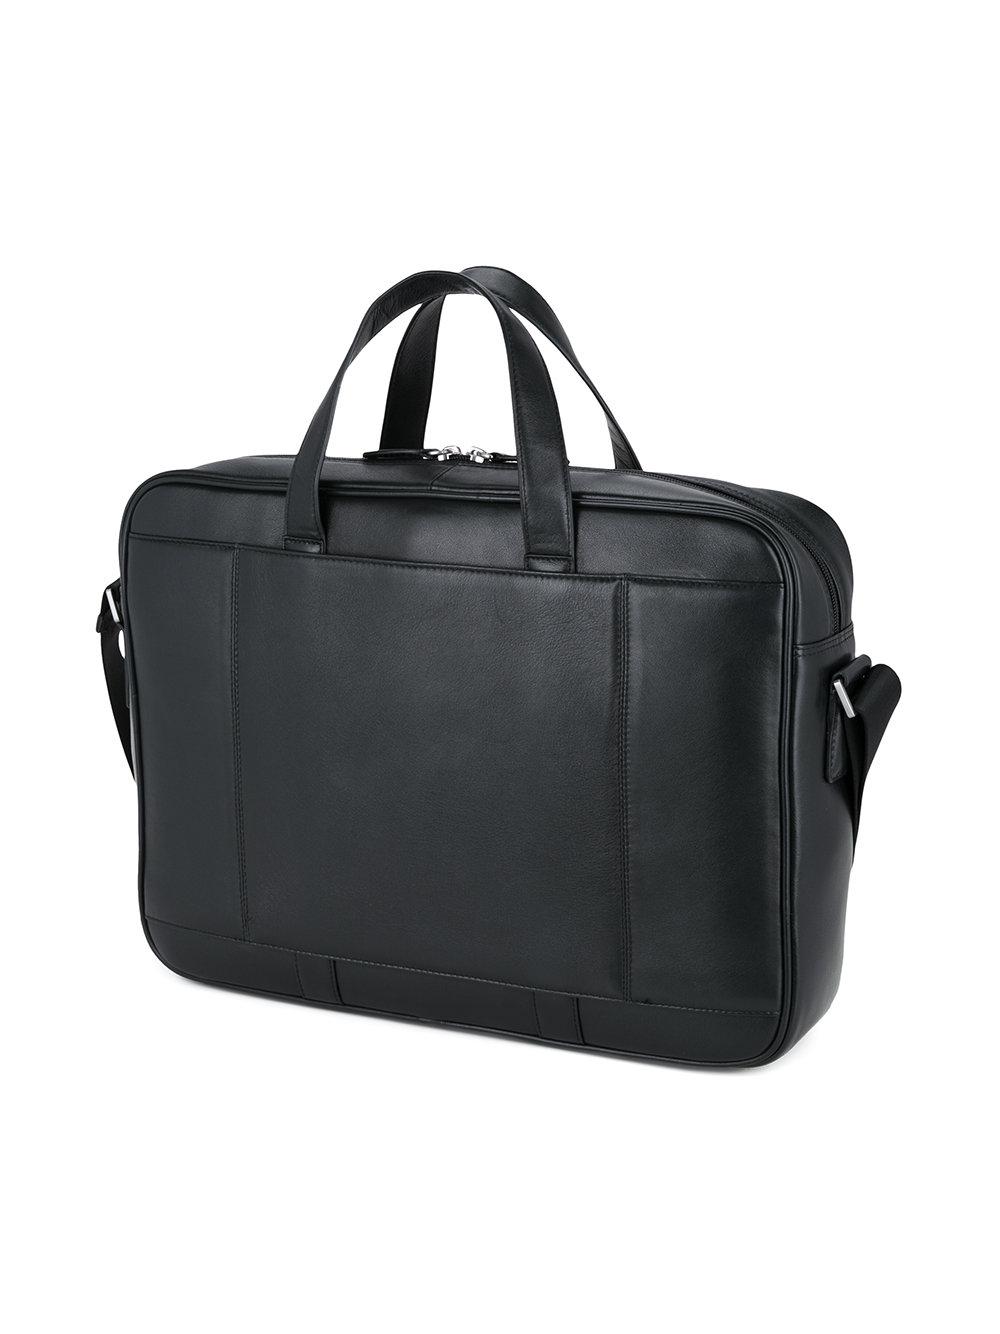 Cerruti 1881 Leather Laptop Bag in Black for Men | Lyst